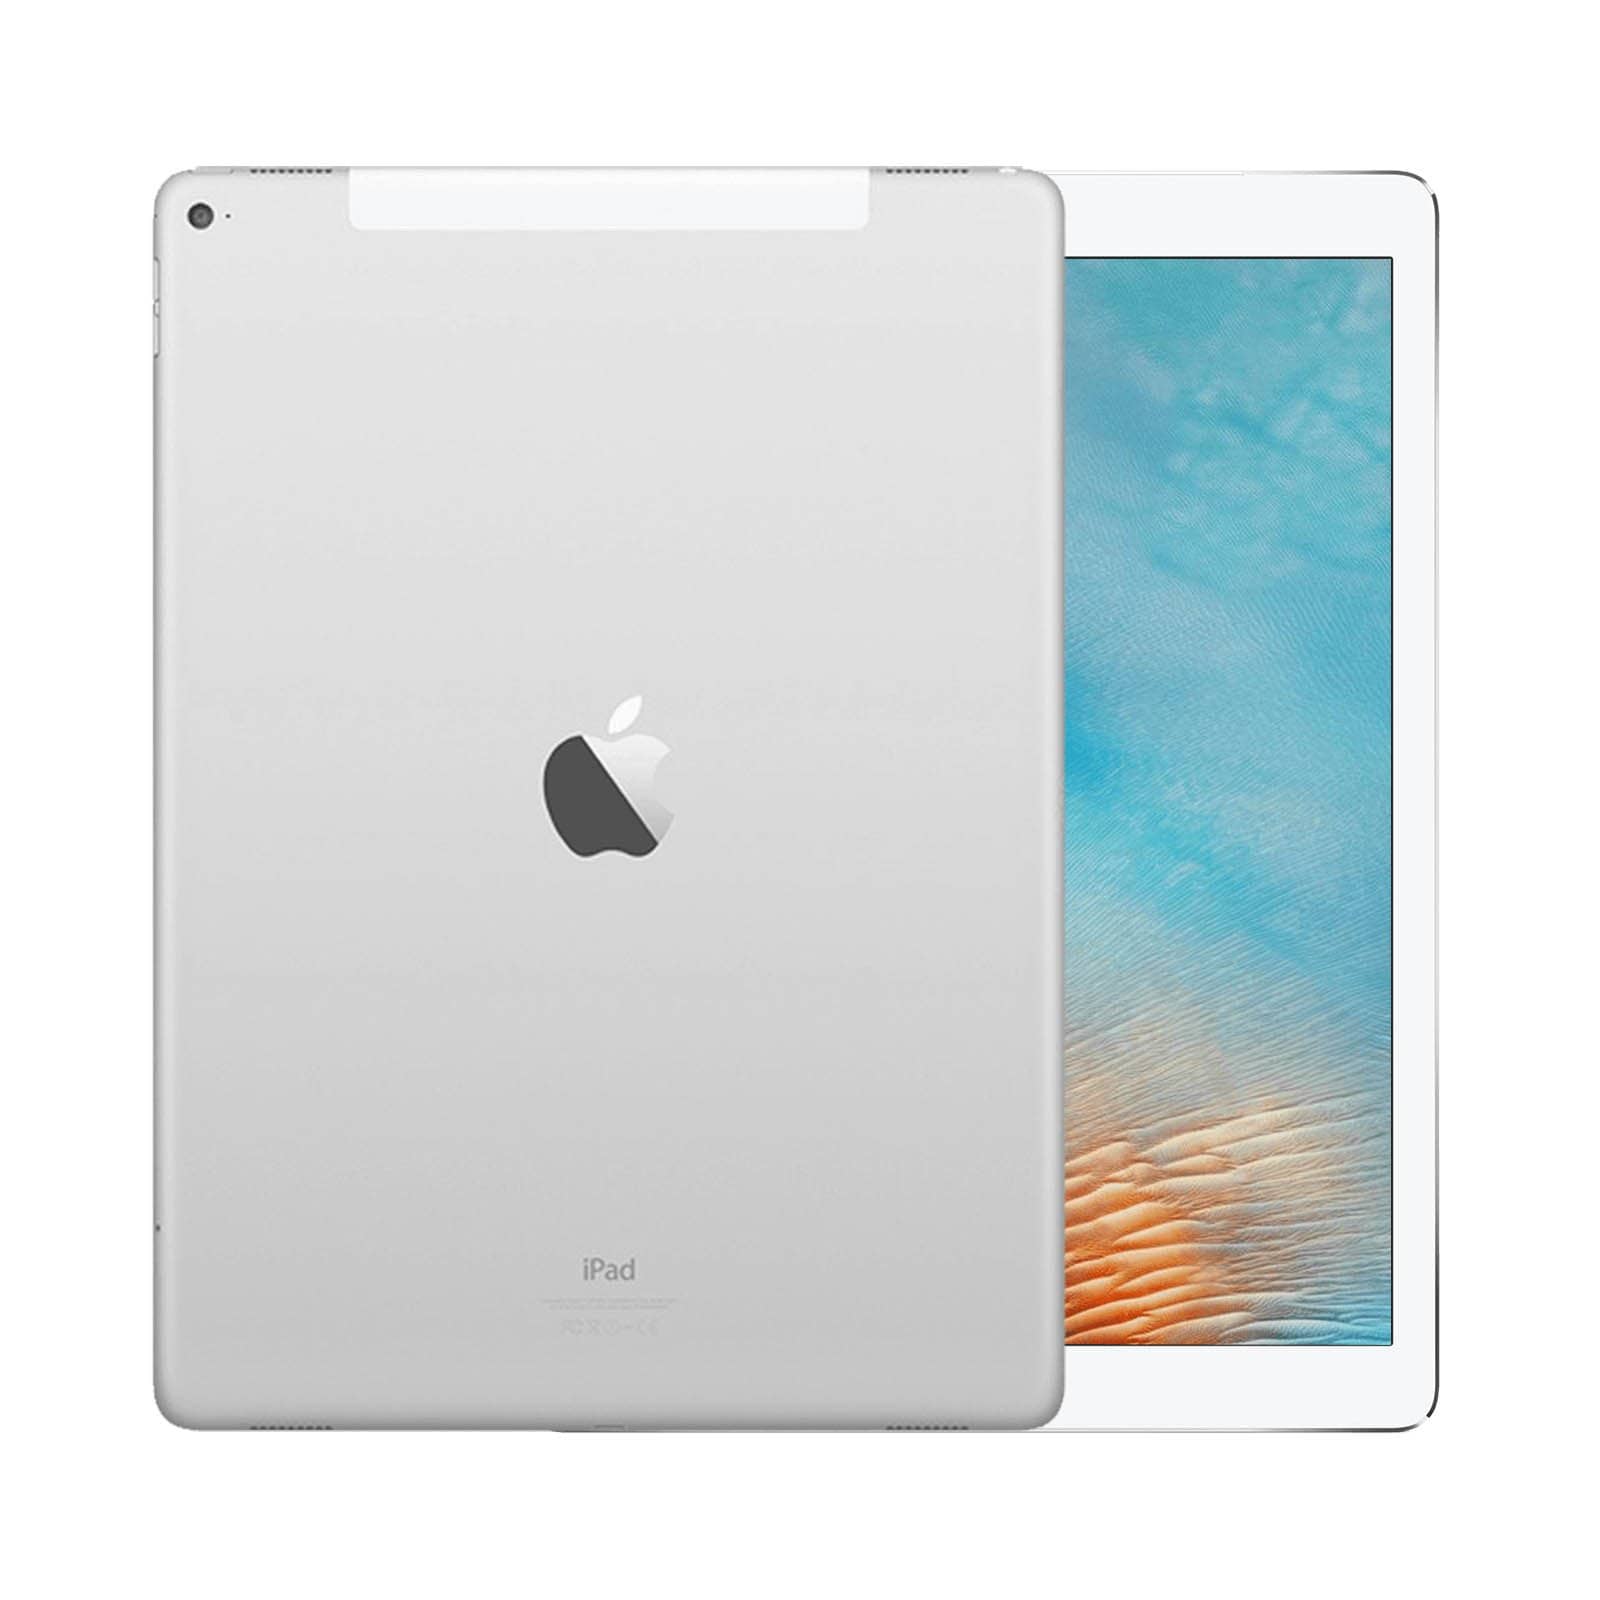 iPad Pro 12.9 Inch 3rd Gen 64GB Silver Good - WiFi 64GB Silver Good